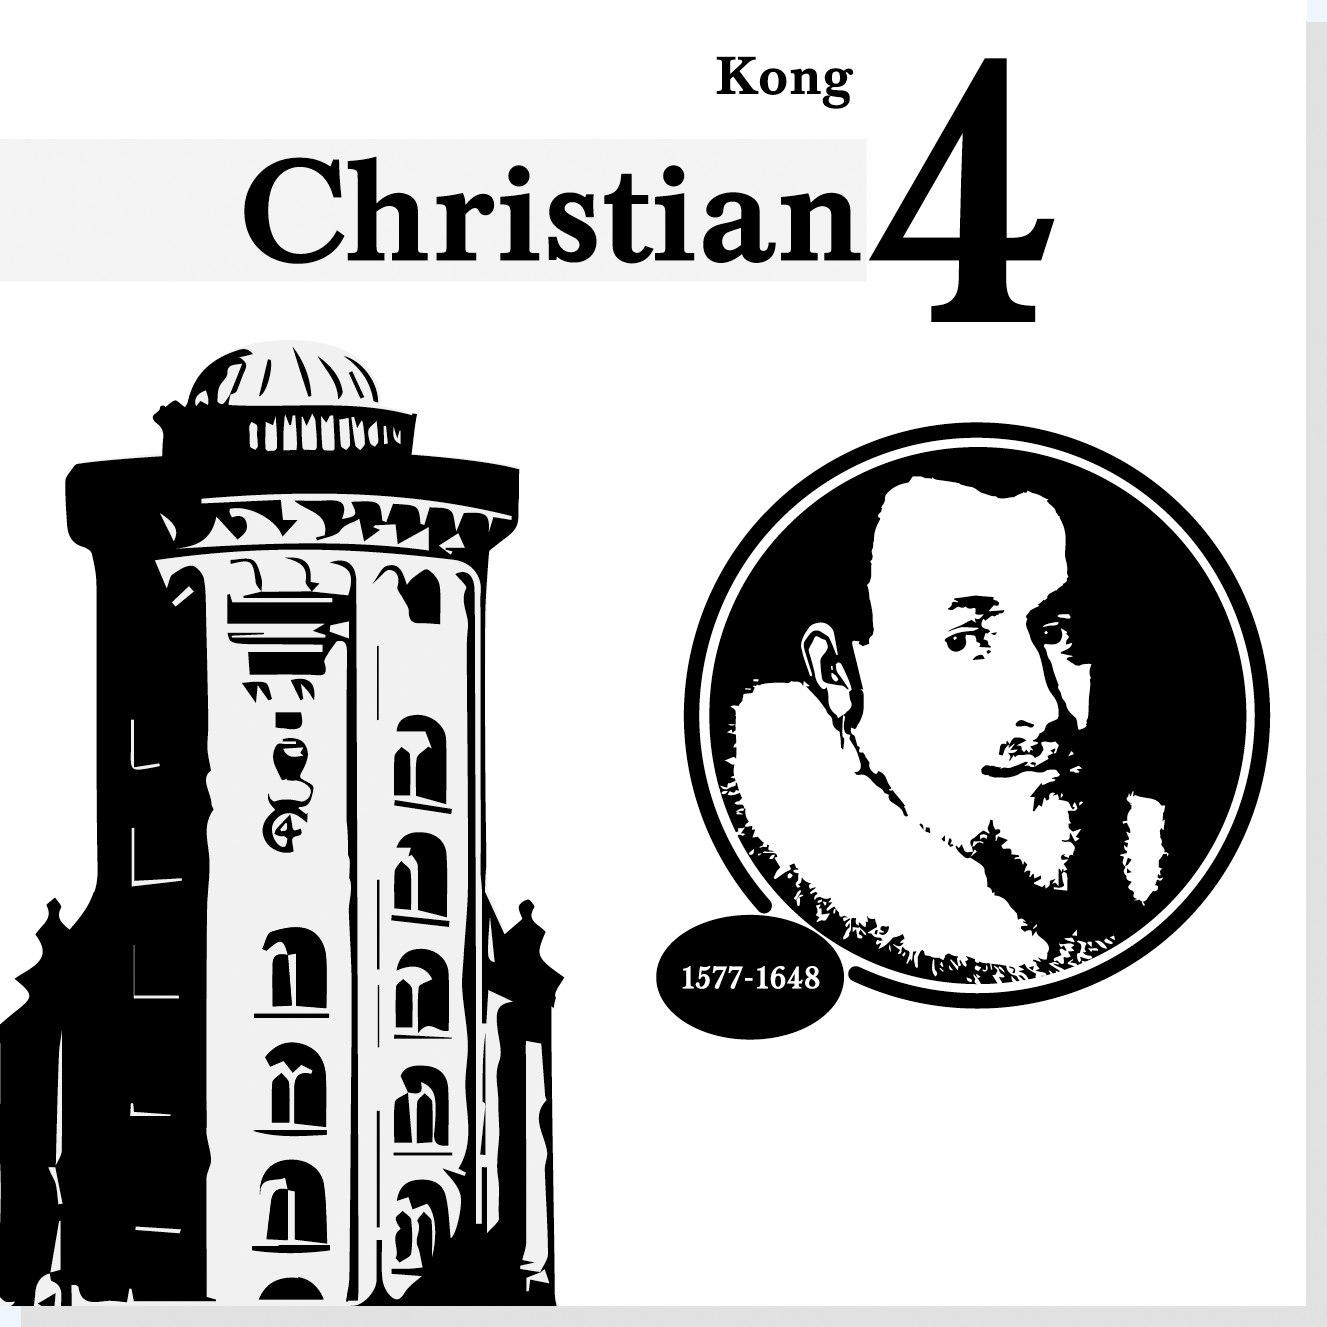 Kong Christian d. 4. er en af Rysensteens 22 udvalgte danske dannelsespersoner